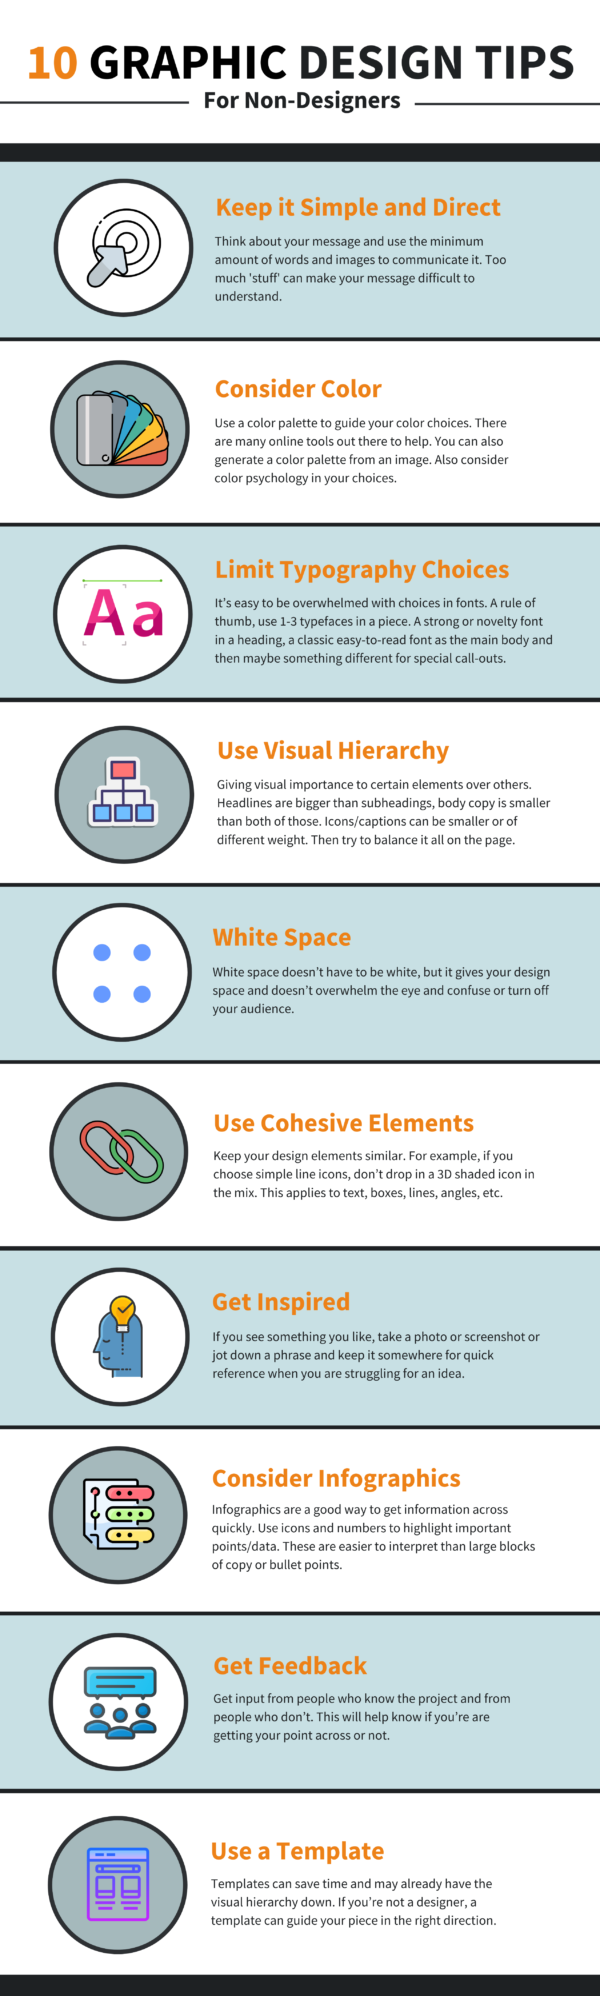 10 Graphic Design Tips For Non-Designers